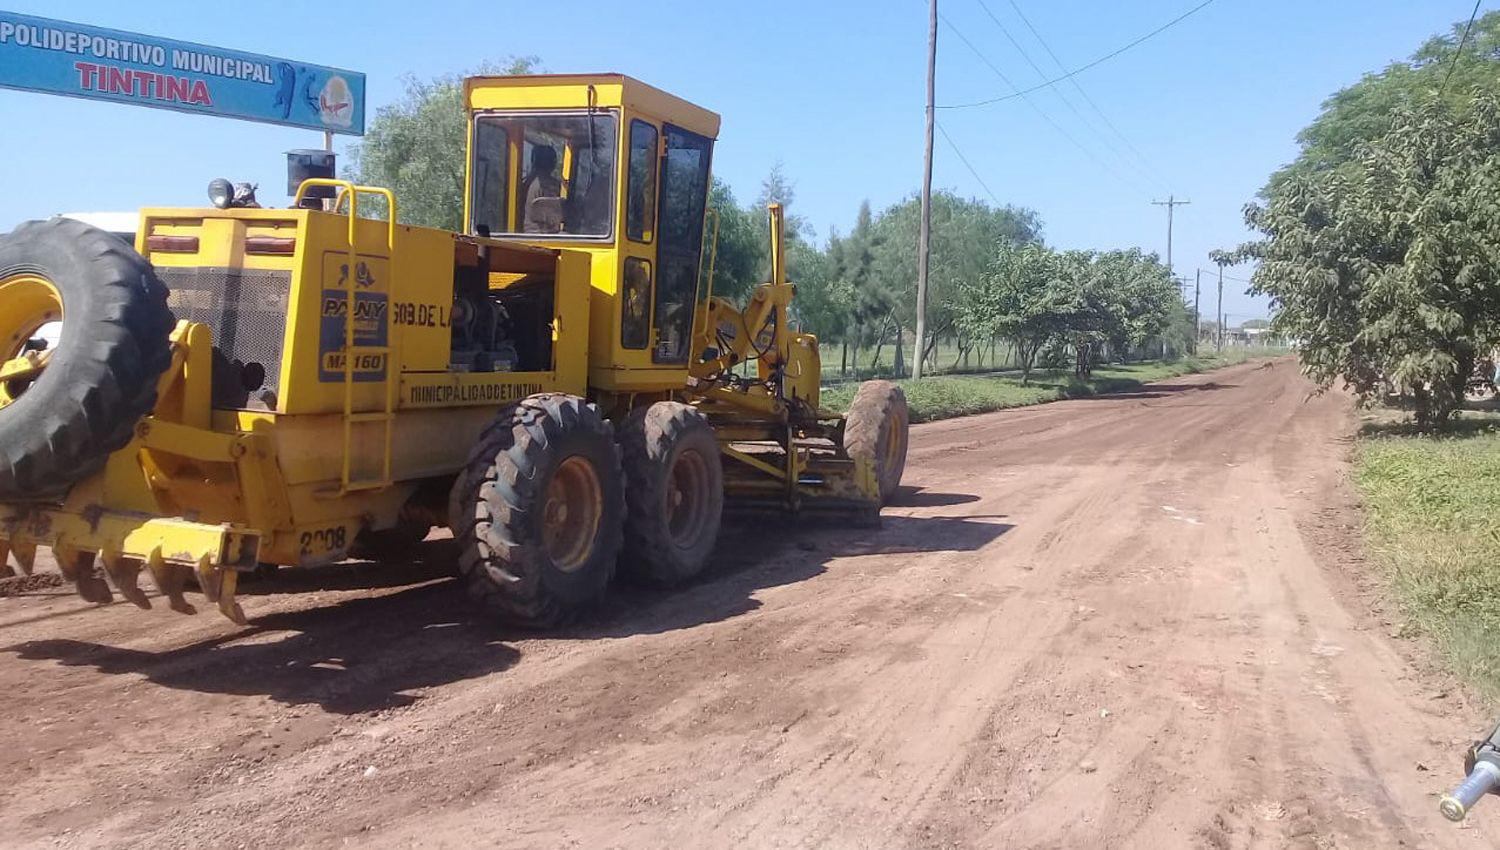 La Municipalidad de Tintina comenzoacute con trabajos de arreglo de calles